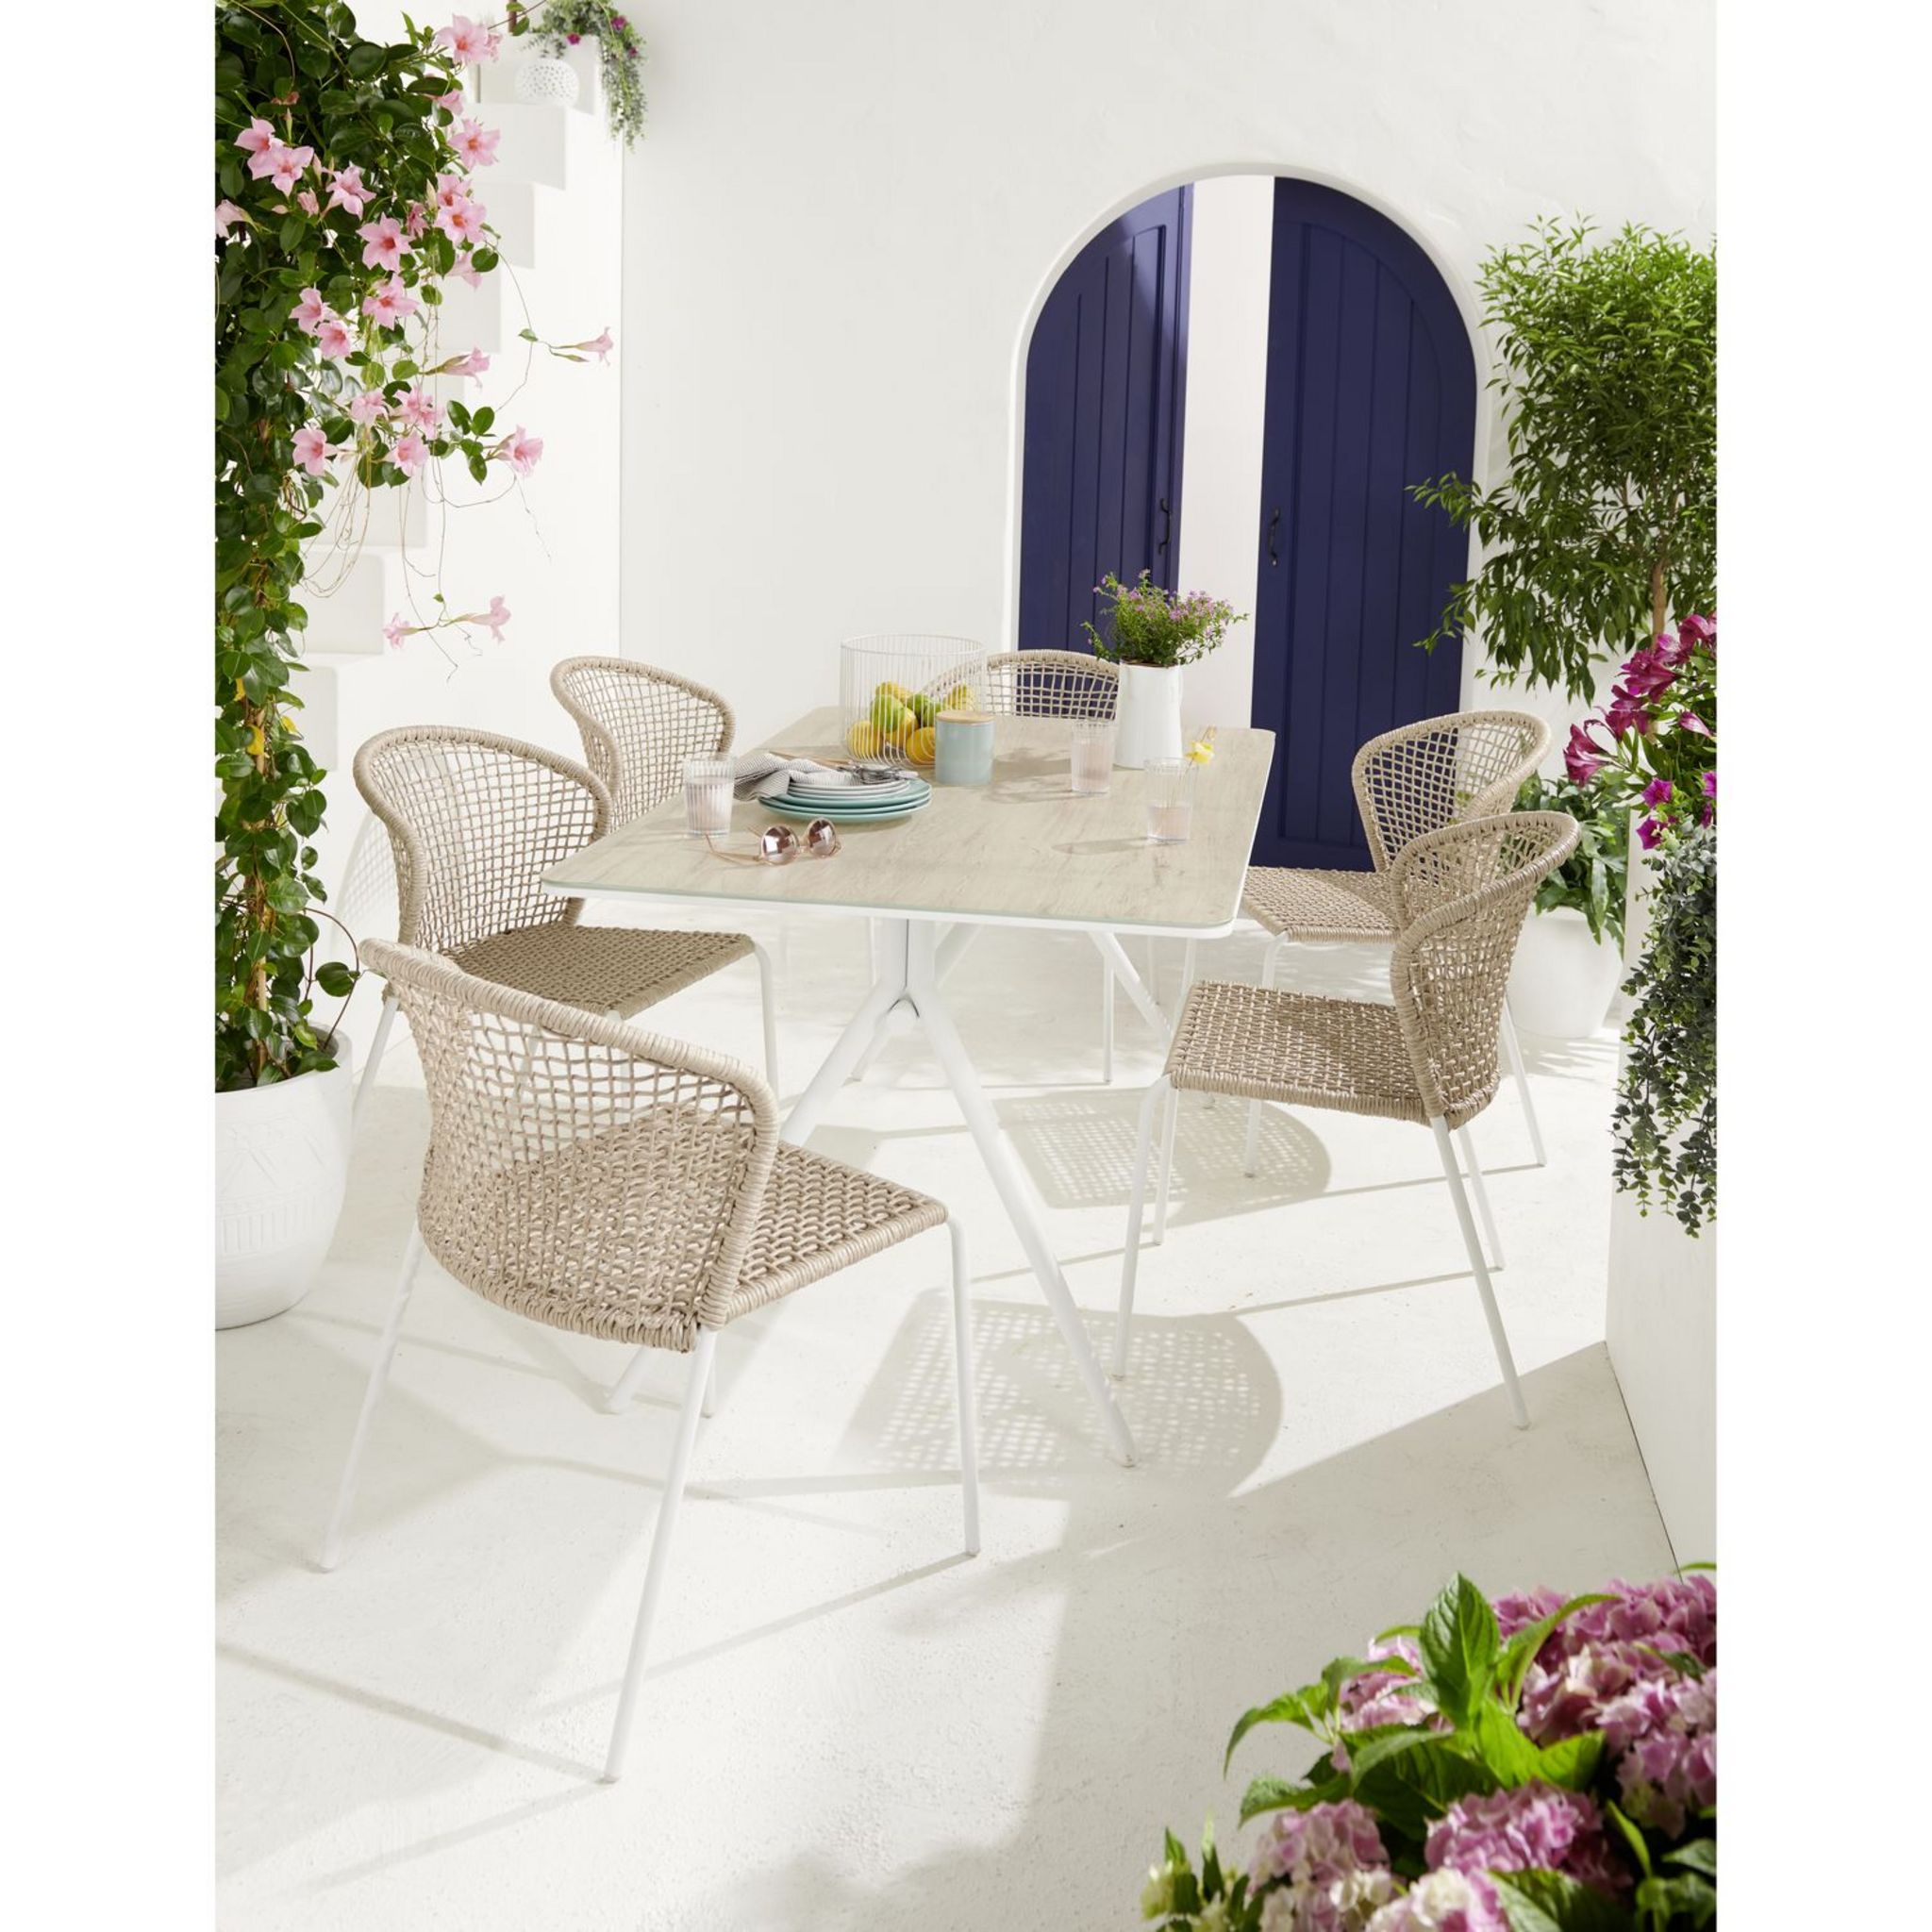 ARETA Table de jardin extensible en résine blanc 8 places LIPARI 2